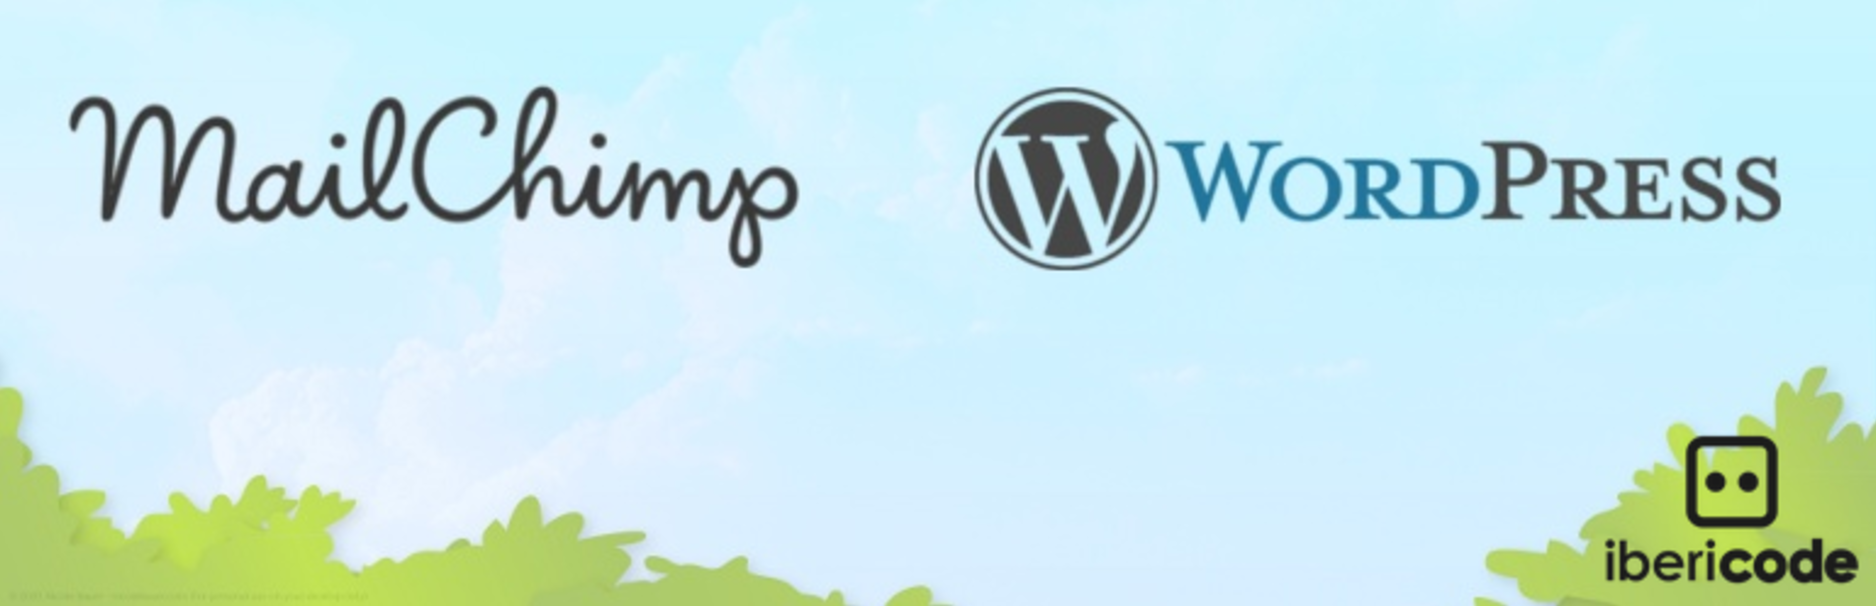 MailChimp für WordPress